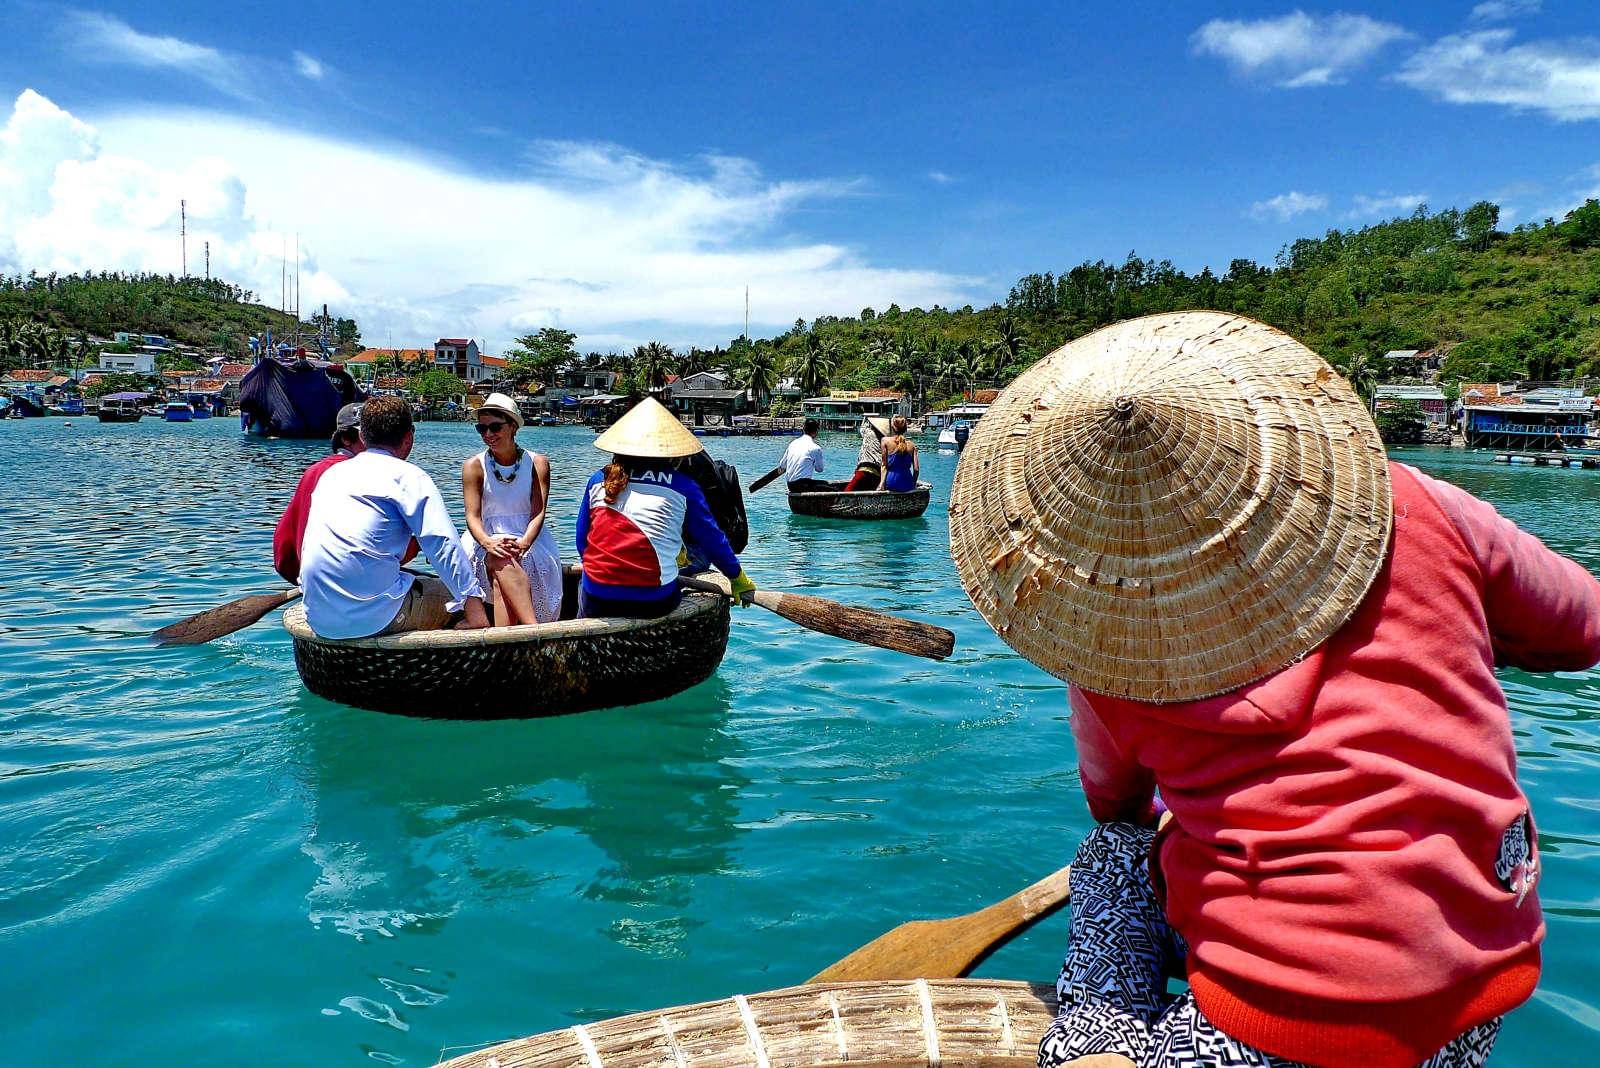 Какие занимательные развлечения предлагает туристам вьетнам? +видео